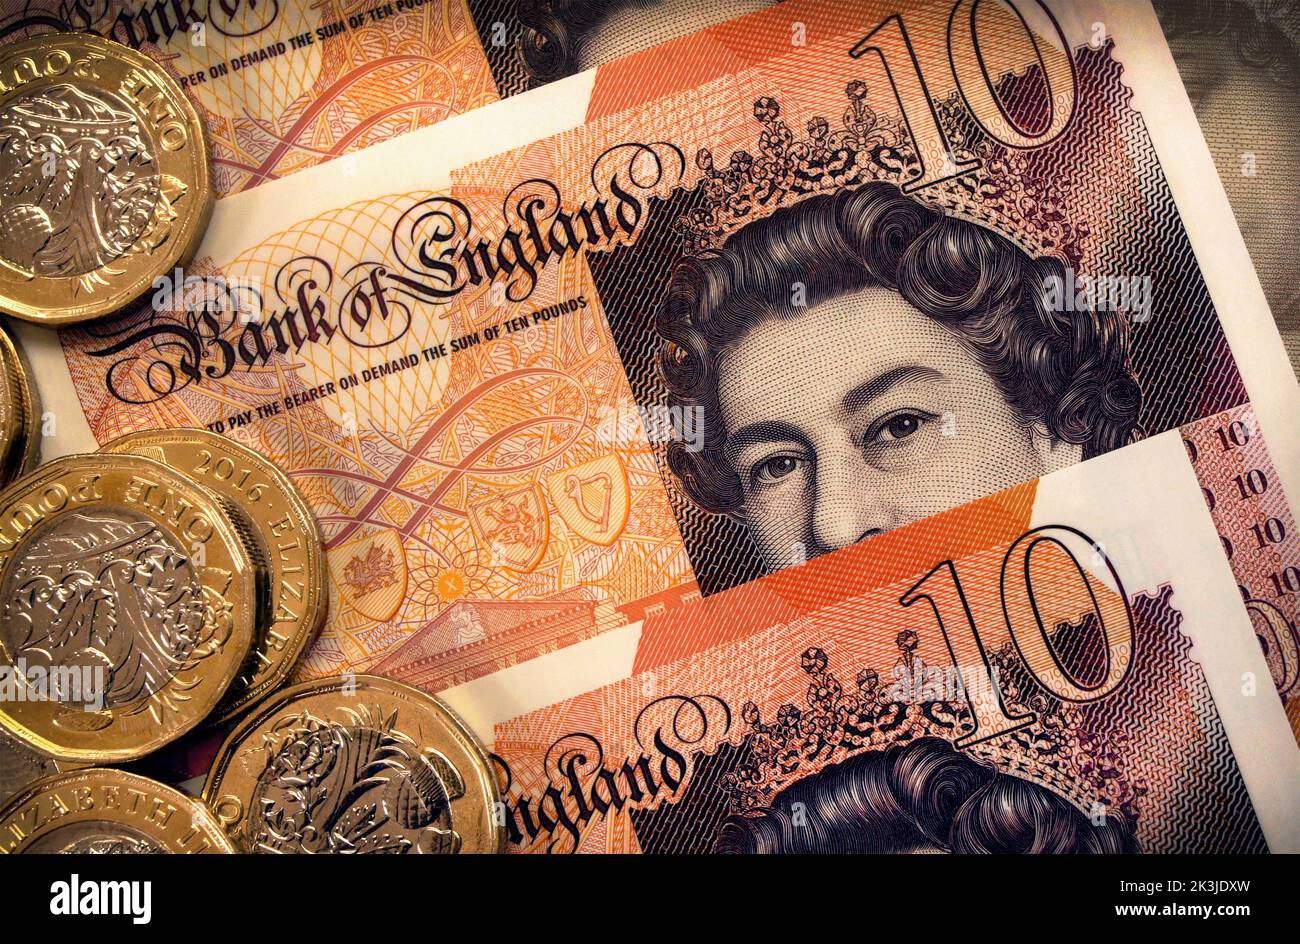 Nahaufnahme des Porträts von Königin Elizabeth II. Auf den Banknoten der Ten Pound Bank of England plus Münzen. Plastikpolymer-Währung eingeführt 2017. Stockfoto